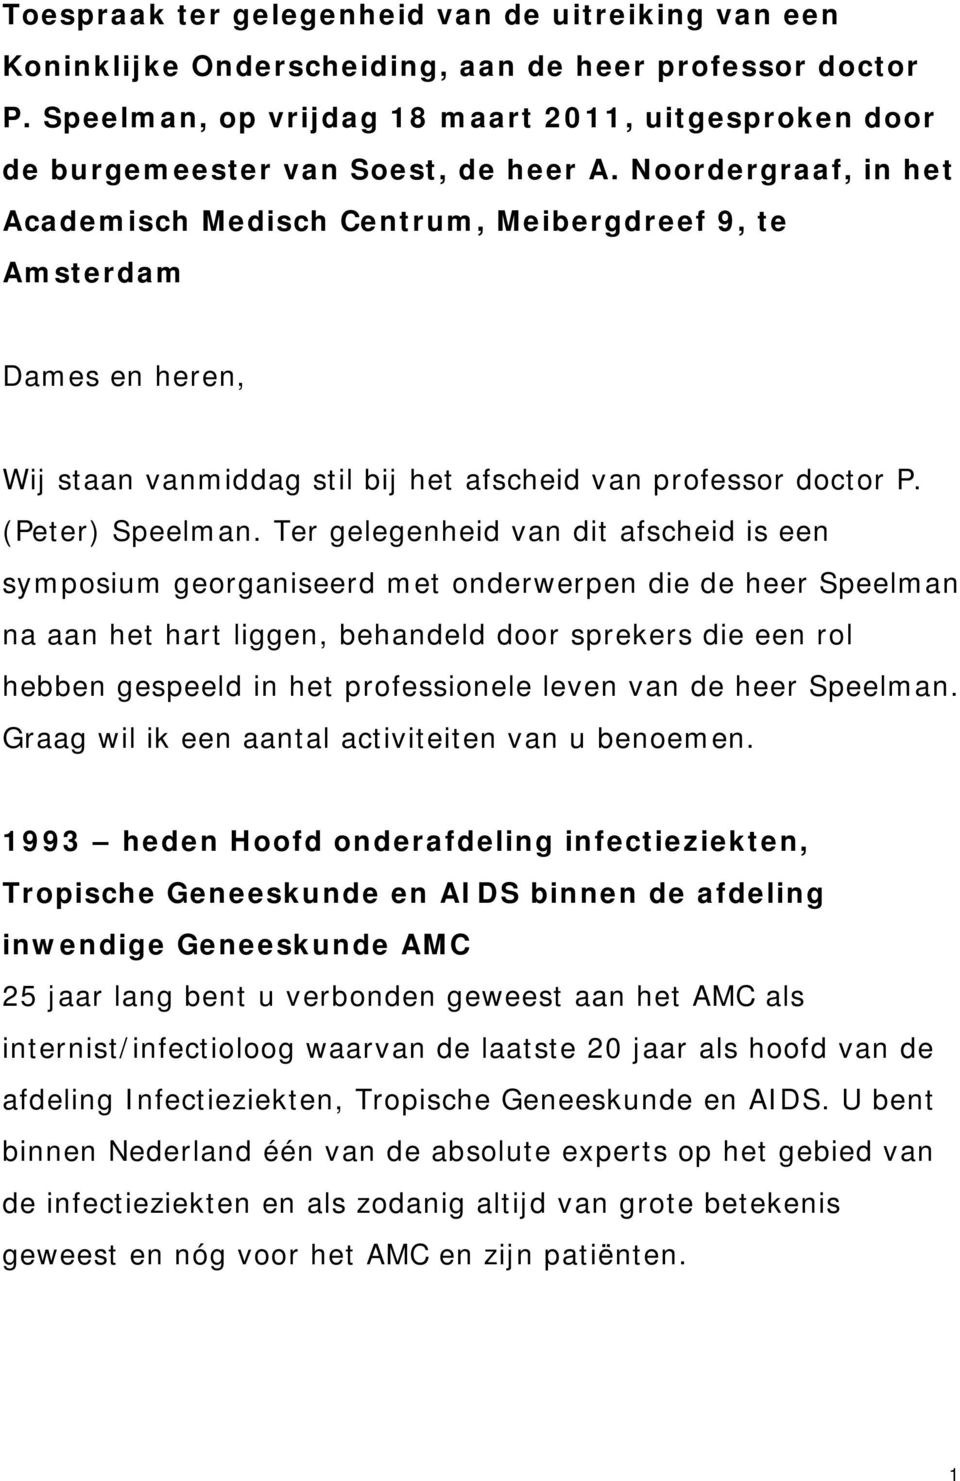 Noordergraaf, in het Academisch Medisch Centrum, Meibergdreef 9, te Amsterdam Dames en heren, Wij staan vanmiddag stil bij het afscheid van professor doctor P. (Peter) Speelman.